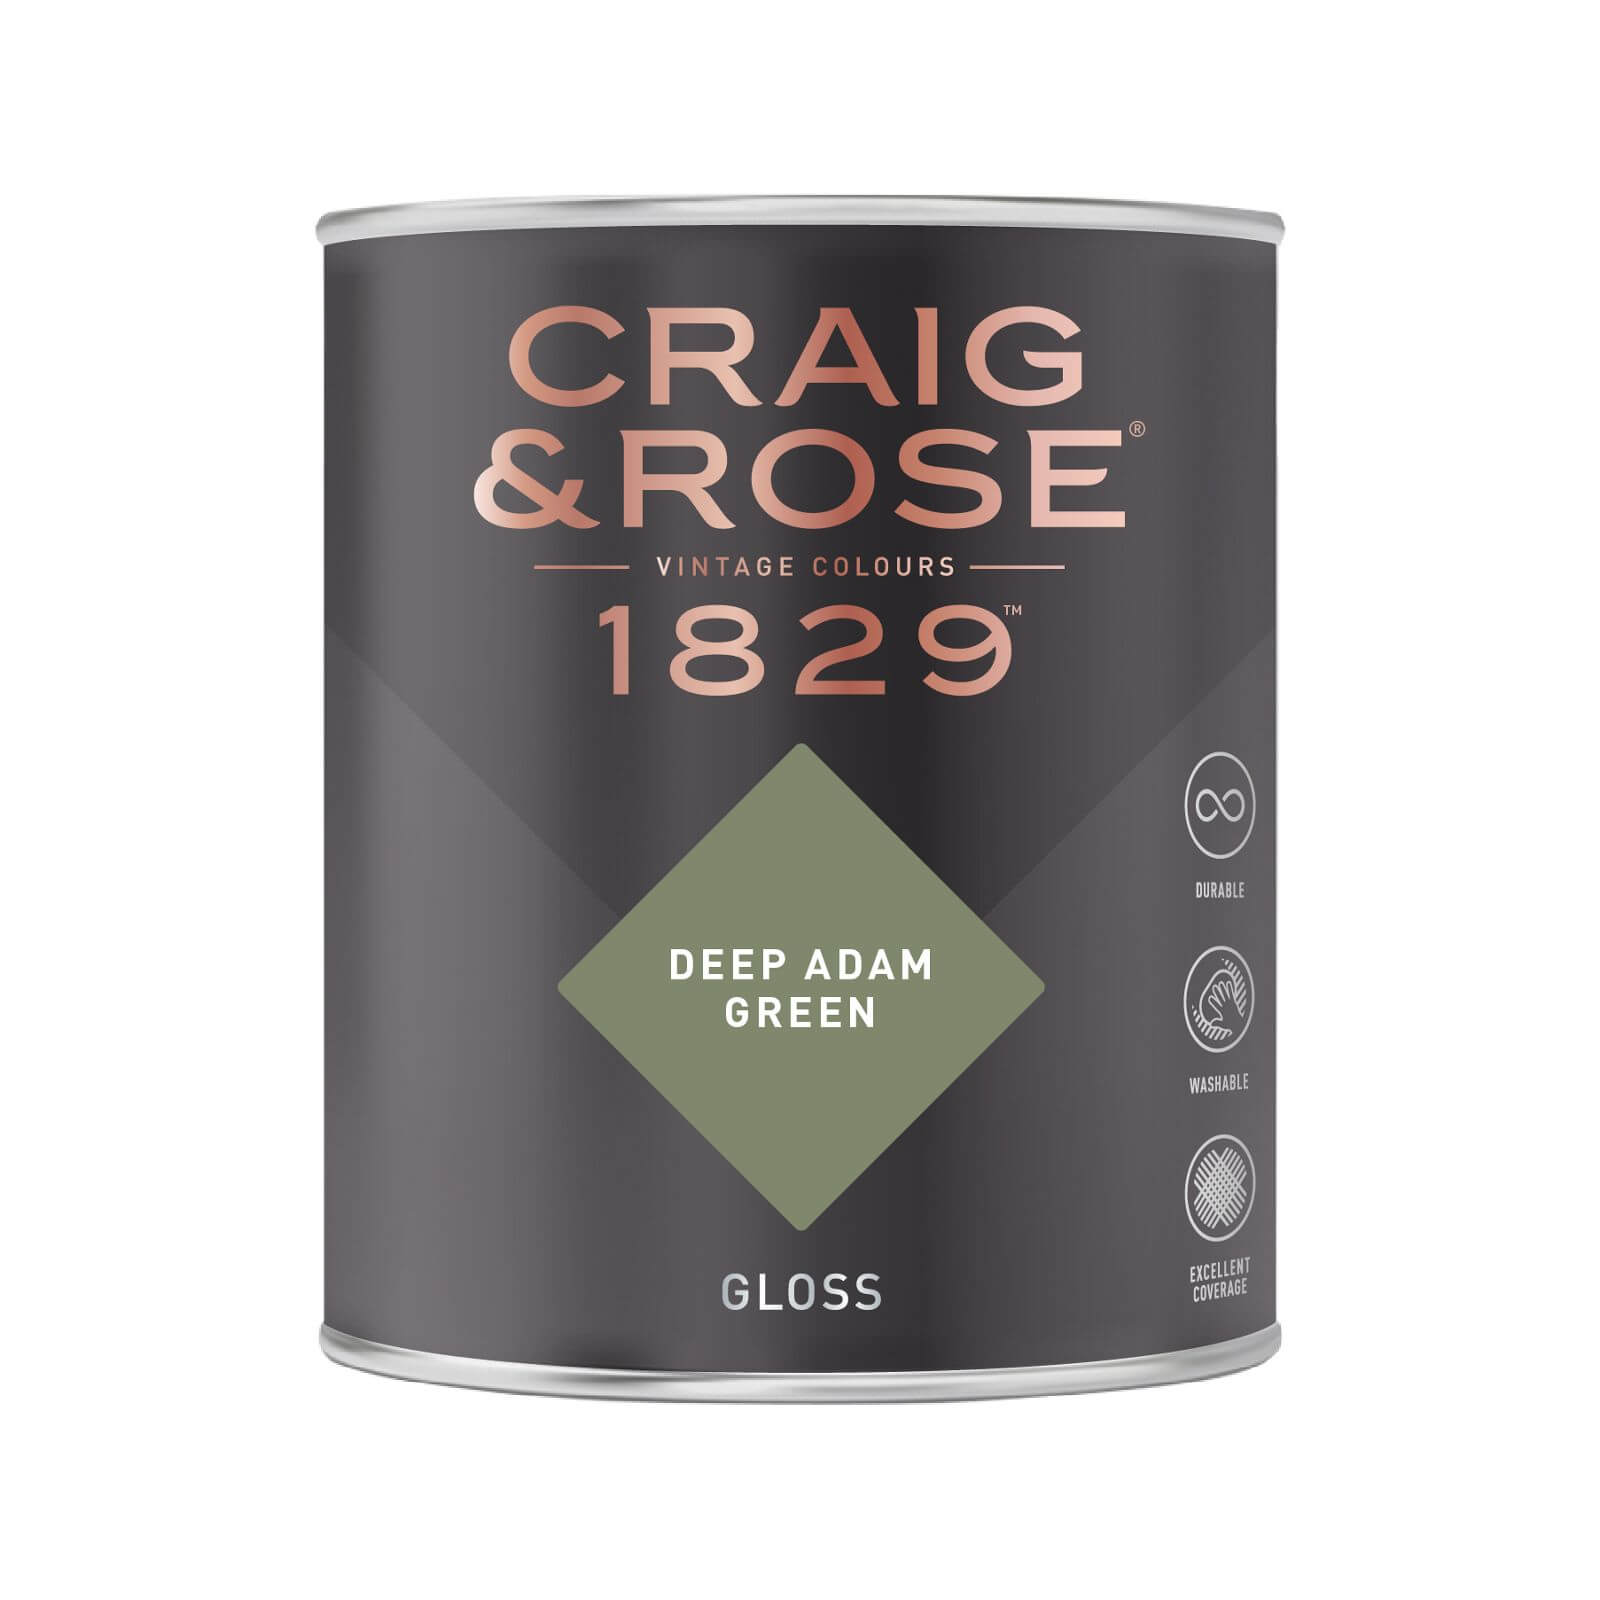 Craig & Rose 1829 Gloss Paint Deep Adam Green - 750ml